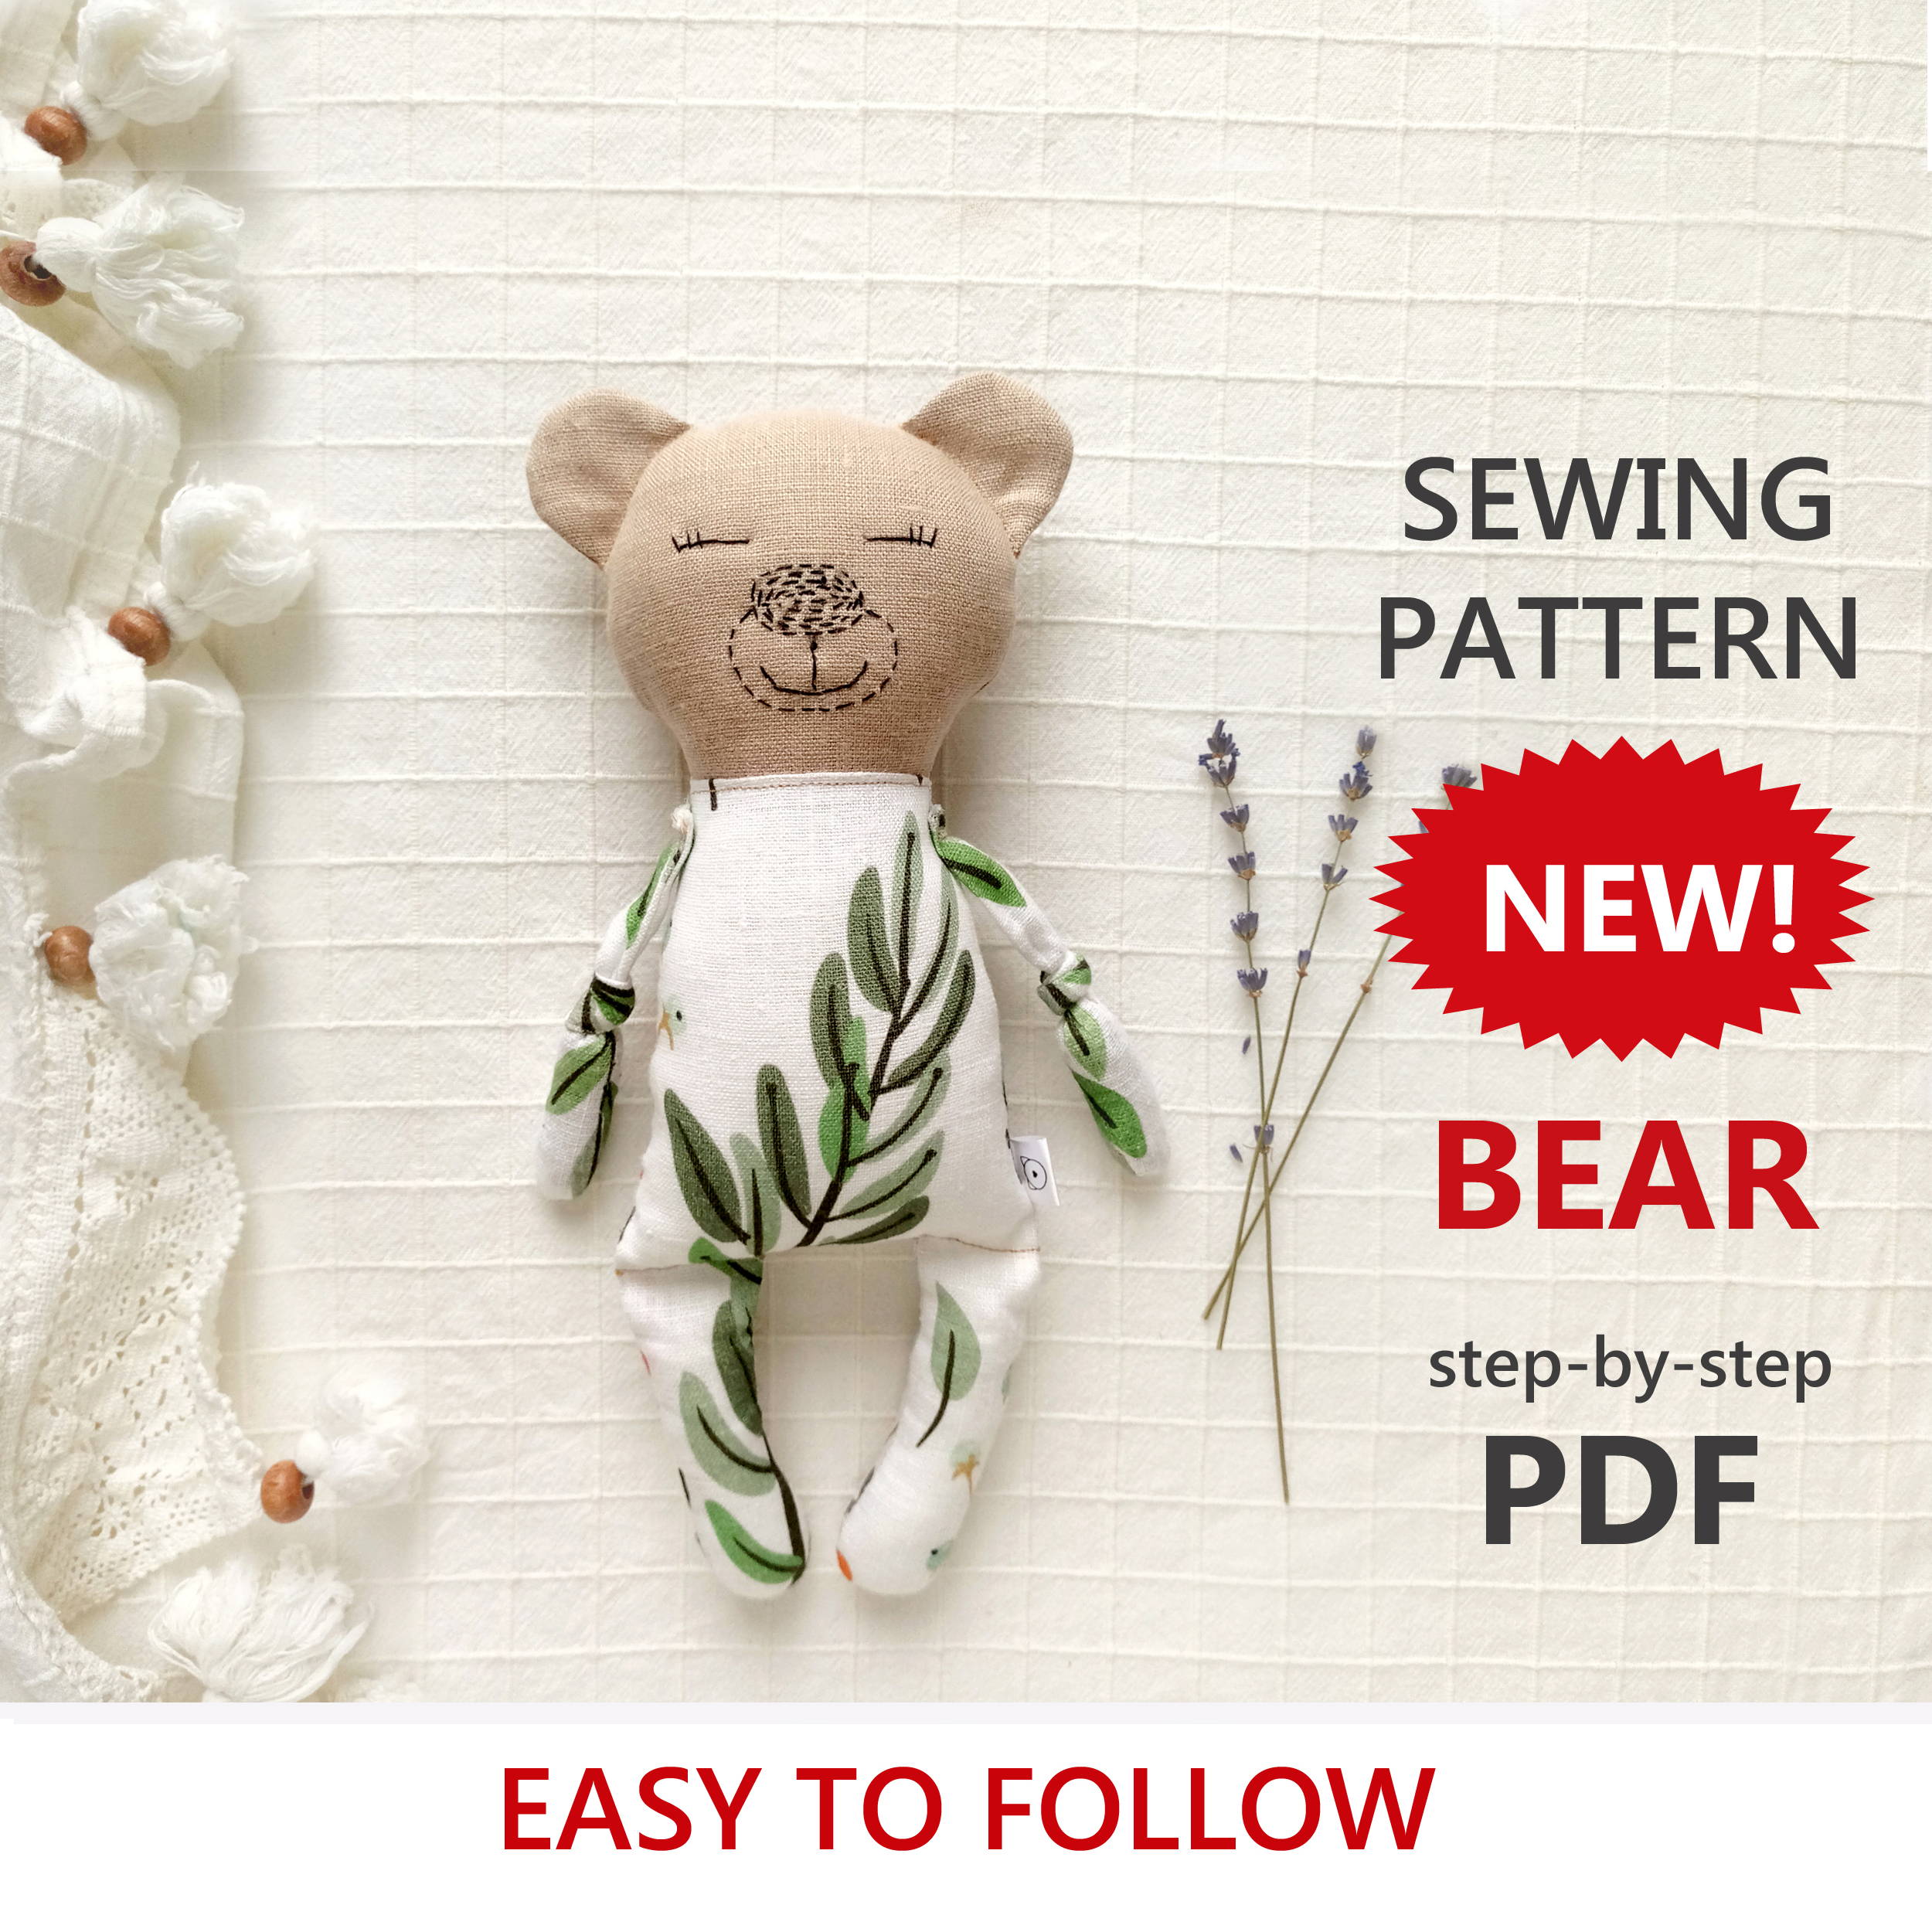 Bear SEWING PATTERN PDF - Memory Bear Stuffed Animal